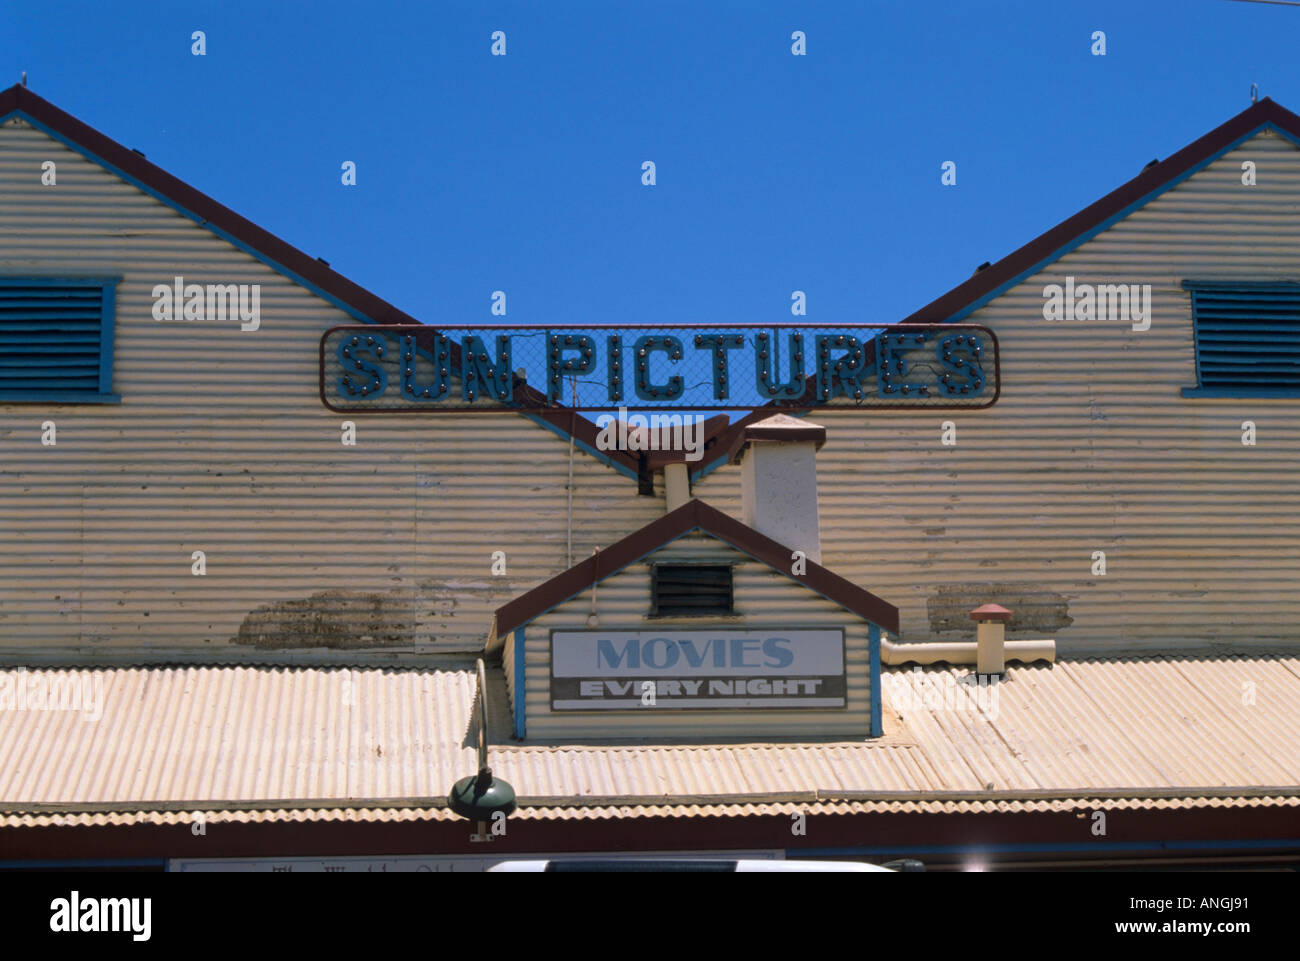 'Images', cinéma extérieur, Broome, Australie occidentale, ville. Banque D'Images